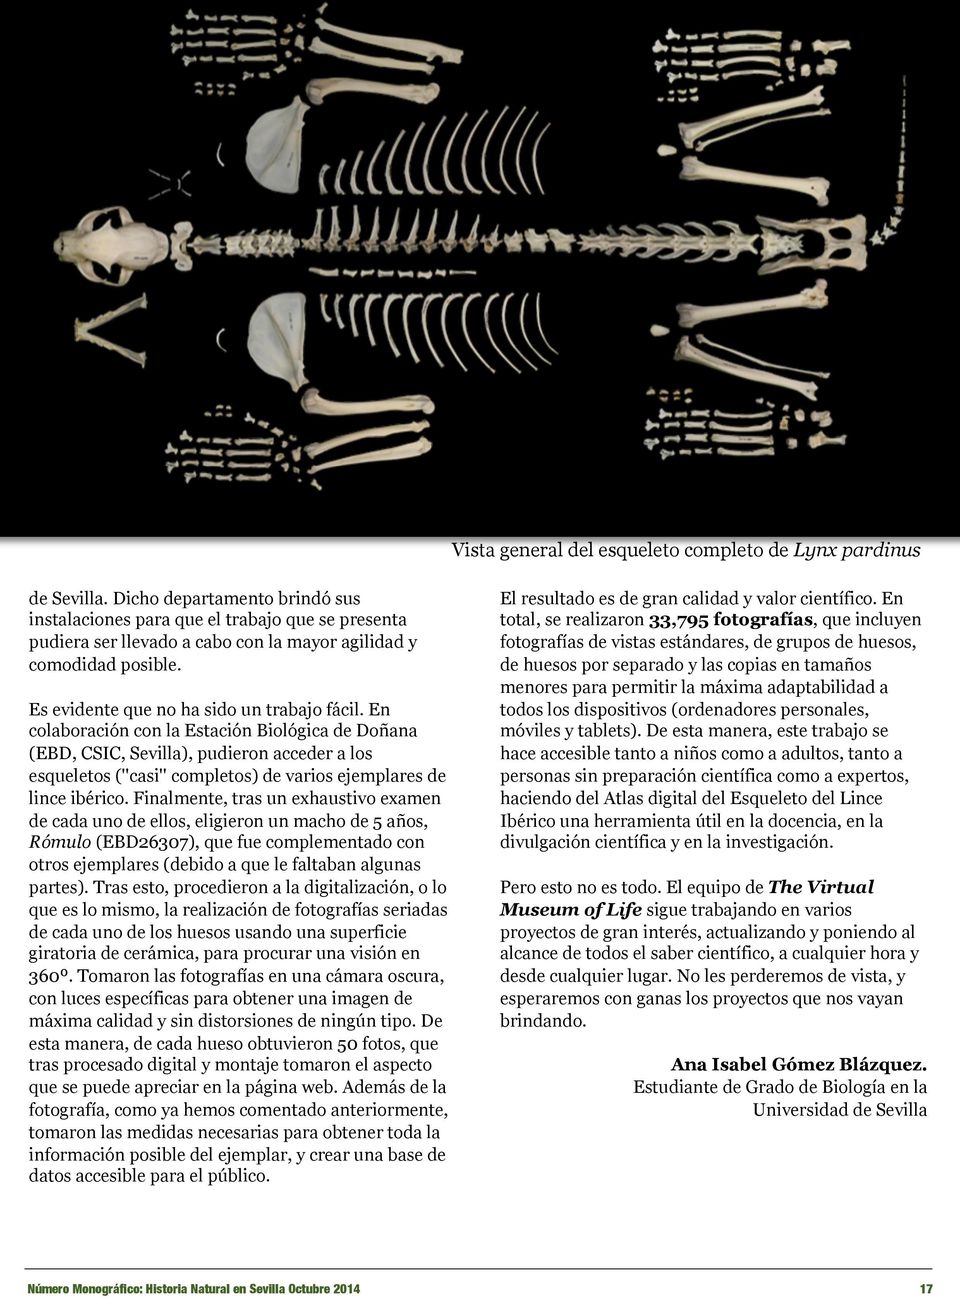 En colaboración con la Estación Biológica de Doñana (EBD, CSIC, Sevilla), pudieron acceder a los esqueletos (''casi'' completos) de varios ejemplares de lince ibérico.